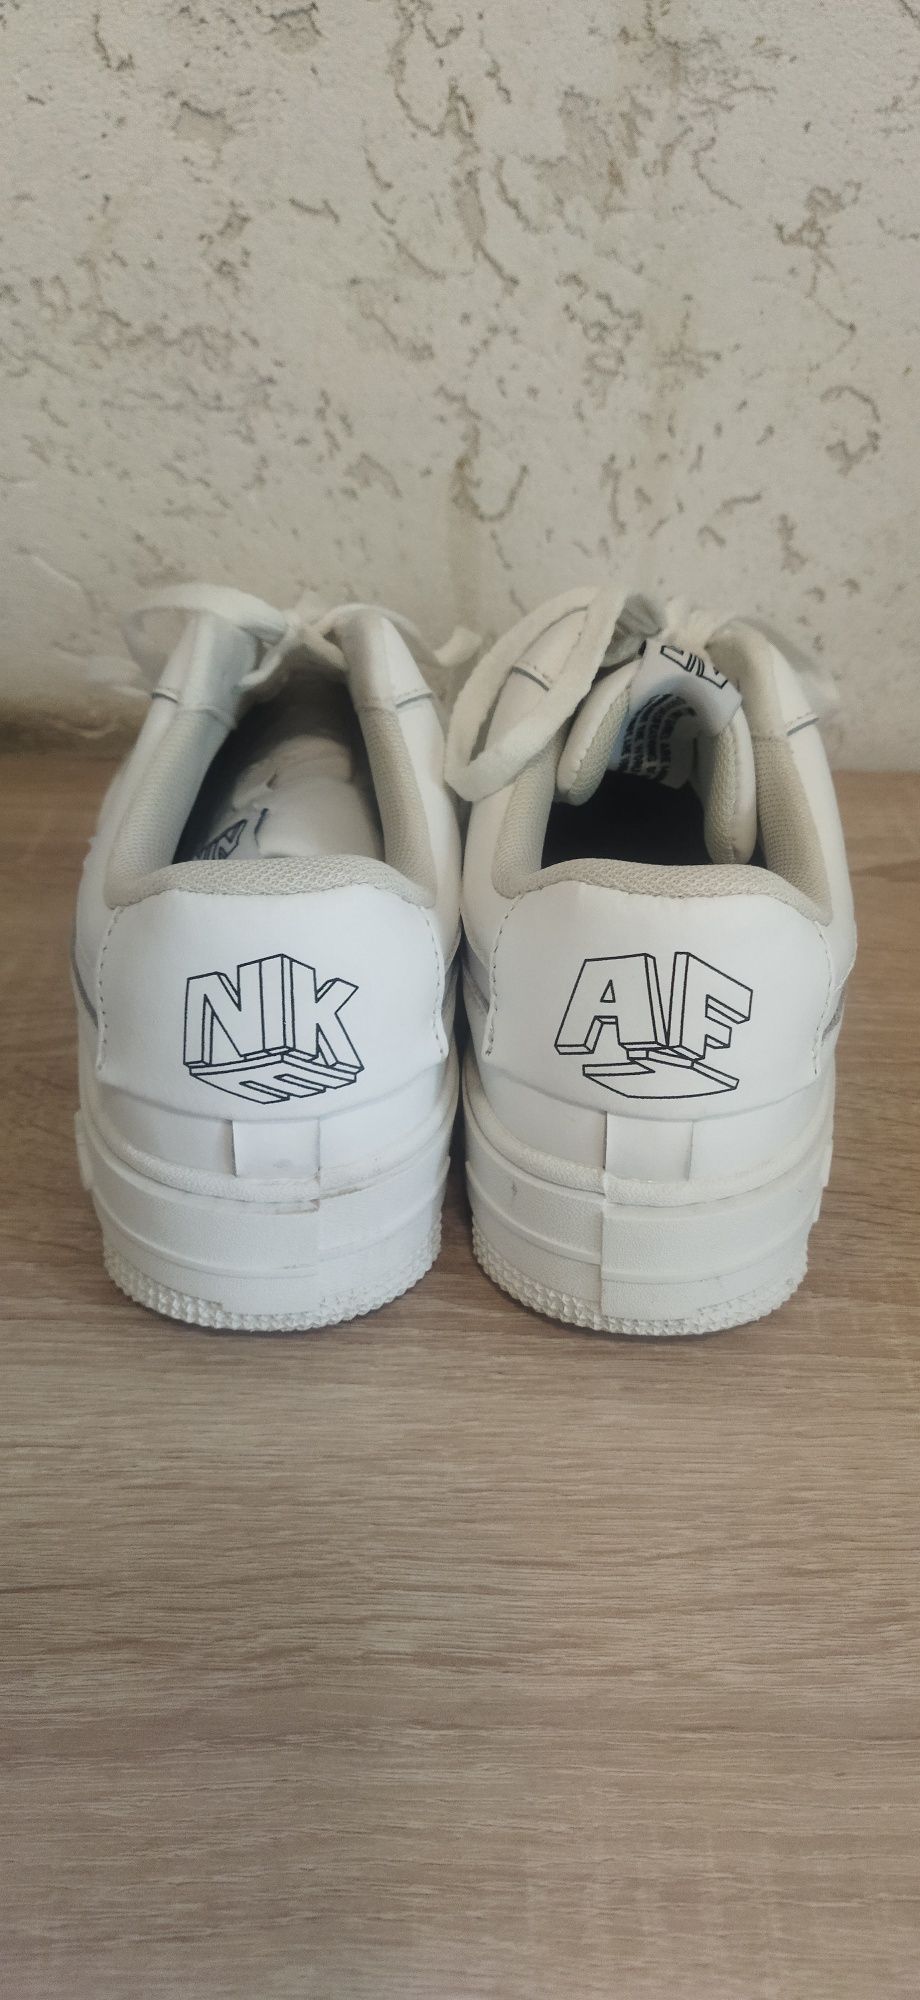 Продам кроссовки Nike Аir из Германии